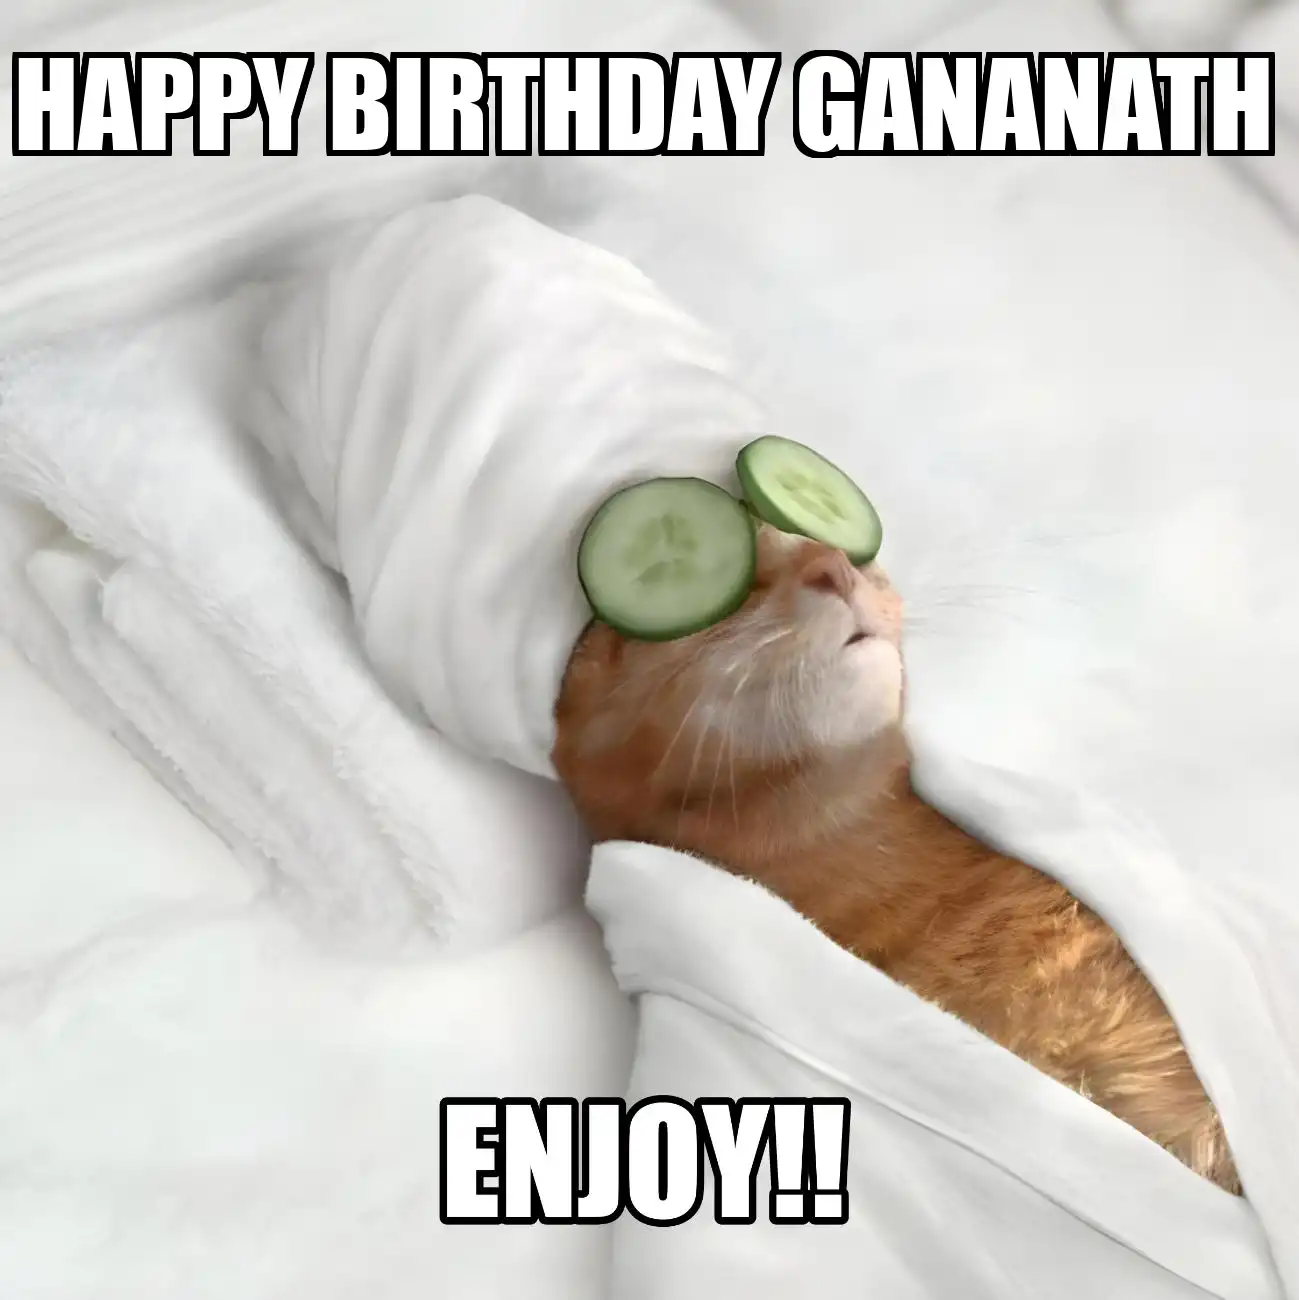 Happy Birthday Gananath Enjoy Cat Meme